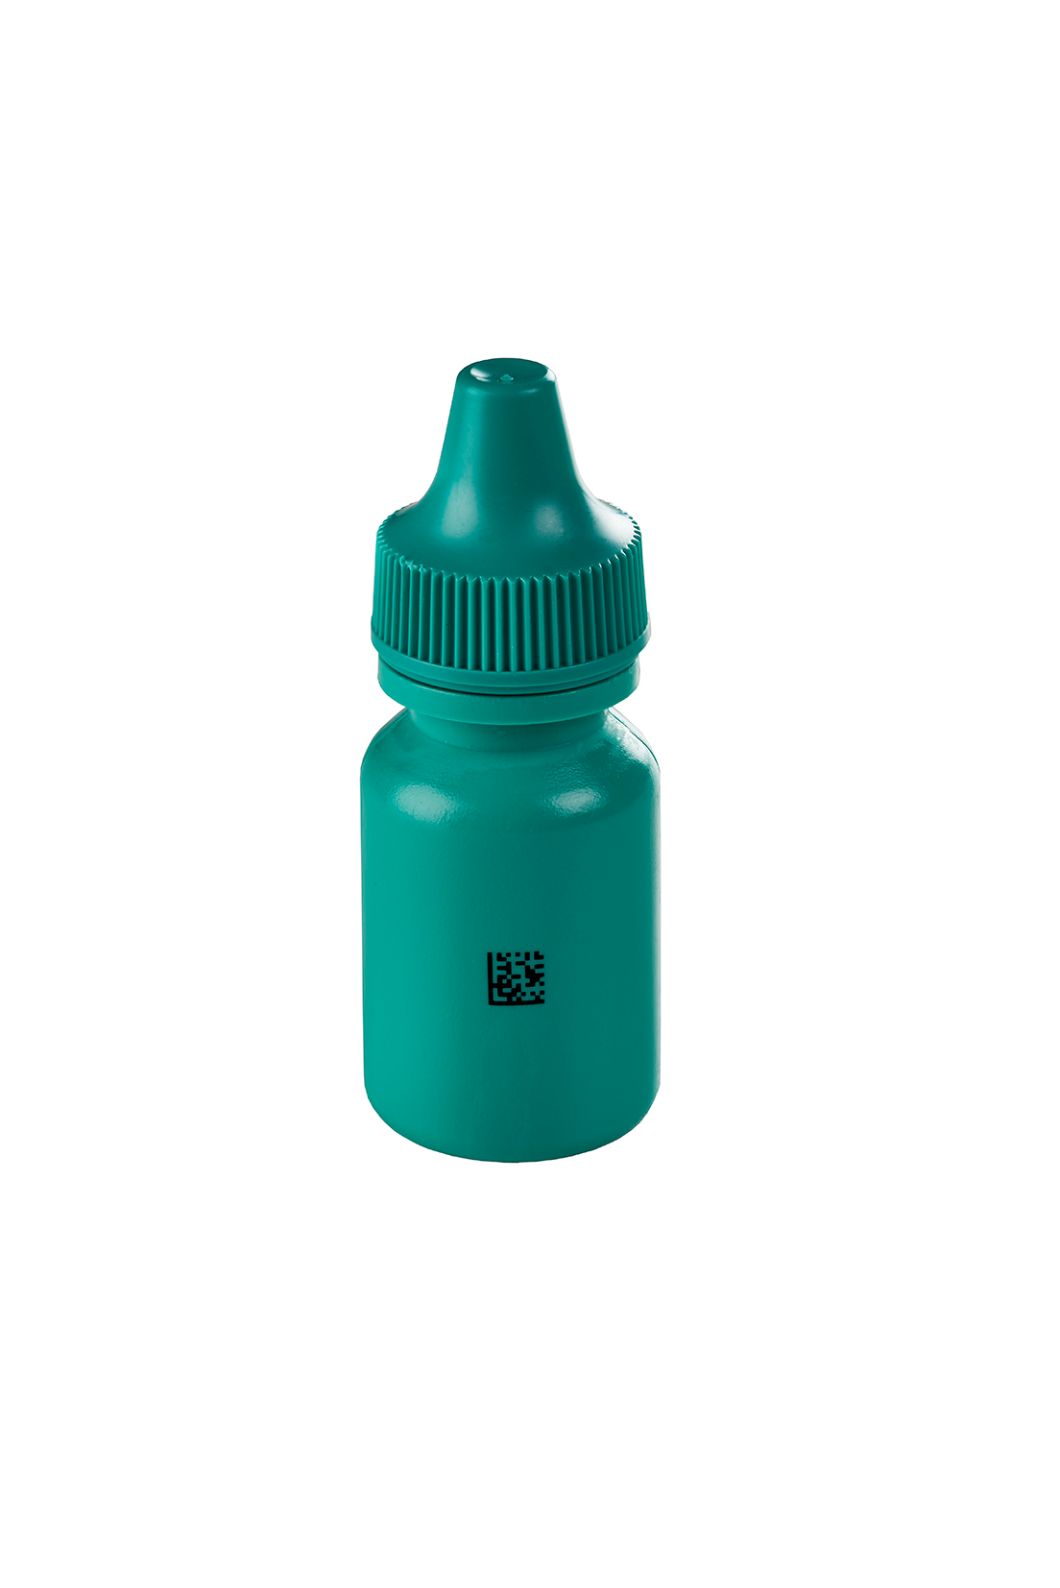 UV Laser 7810: Datamatrix Code auf Plastikflasche